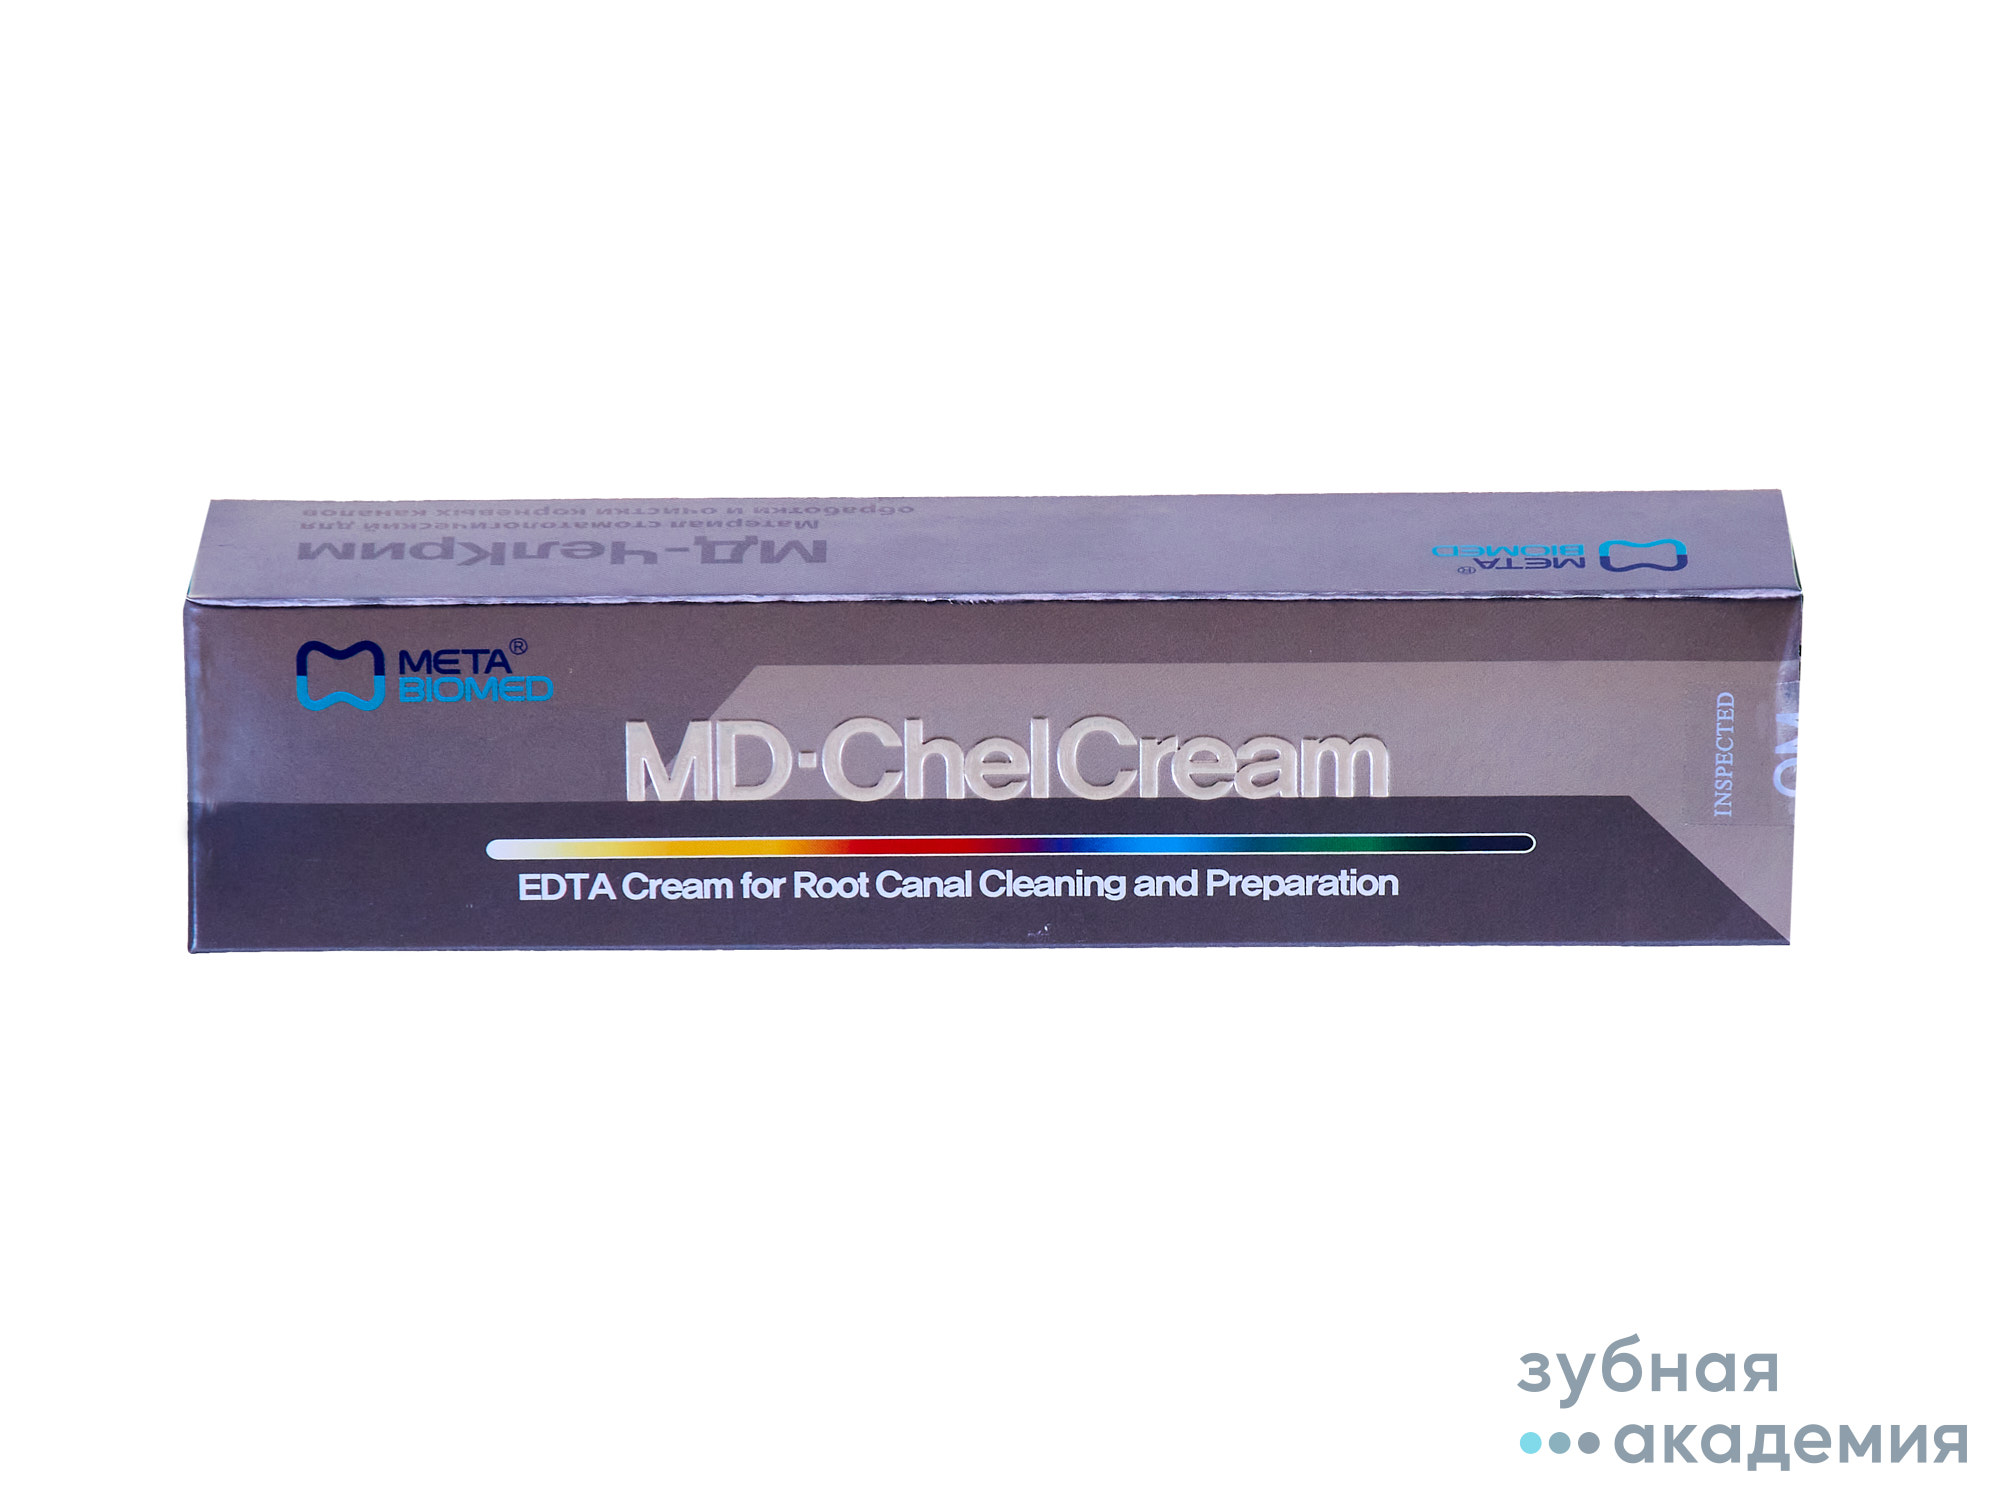 MD-ChelCream / МД-ЧелКрем для очистки и обработки корневых каналов 2*7г МЕТА/Корея